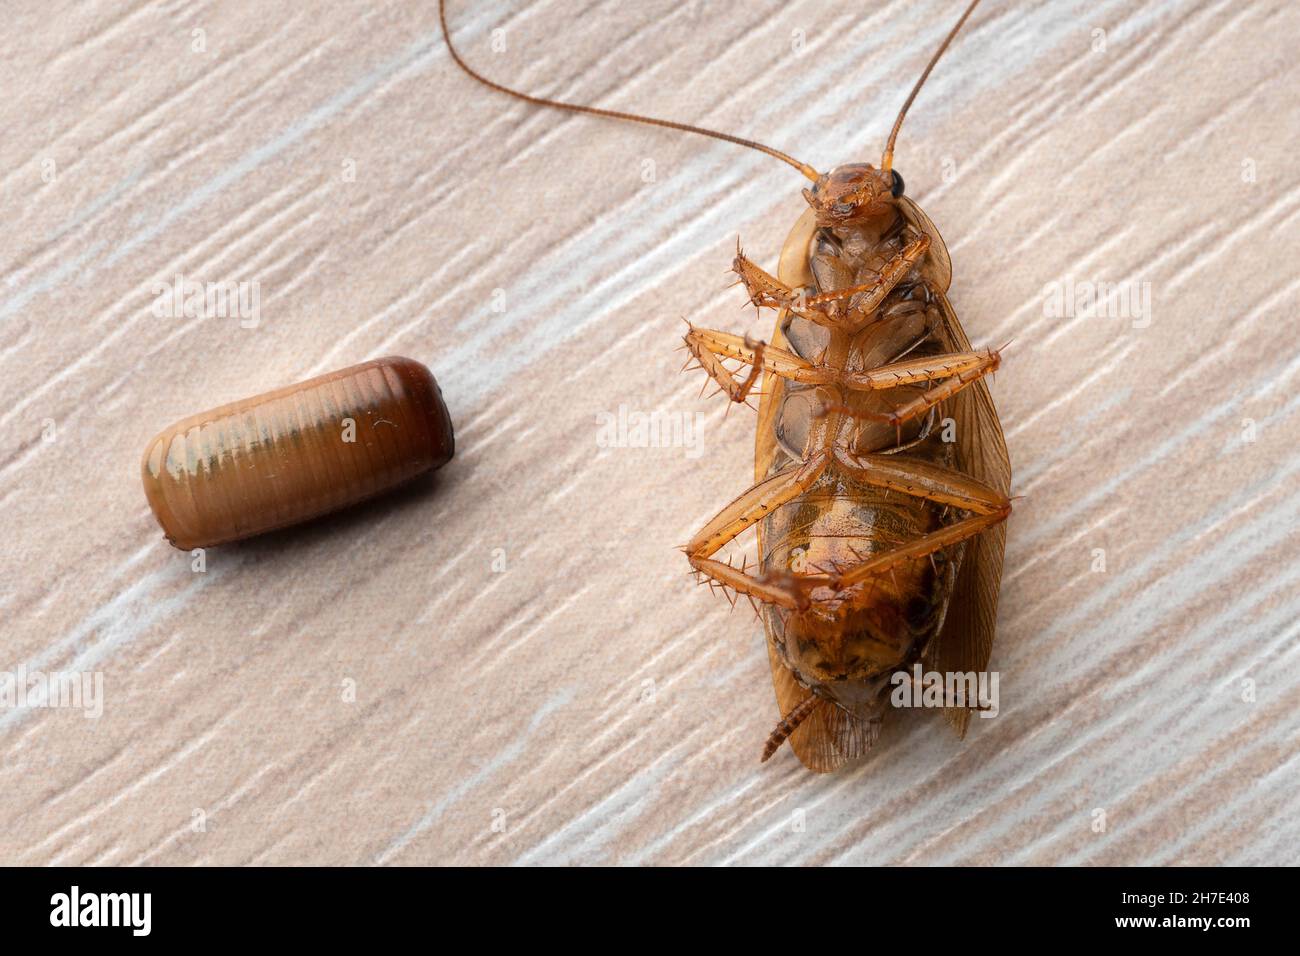 Lo scarafaggio rosso giace sulla schiena vicino a un uovo macro Foto Stock